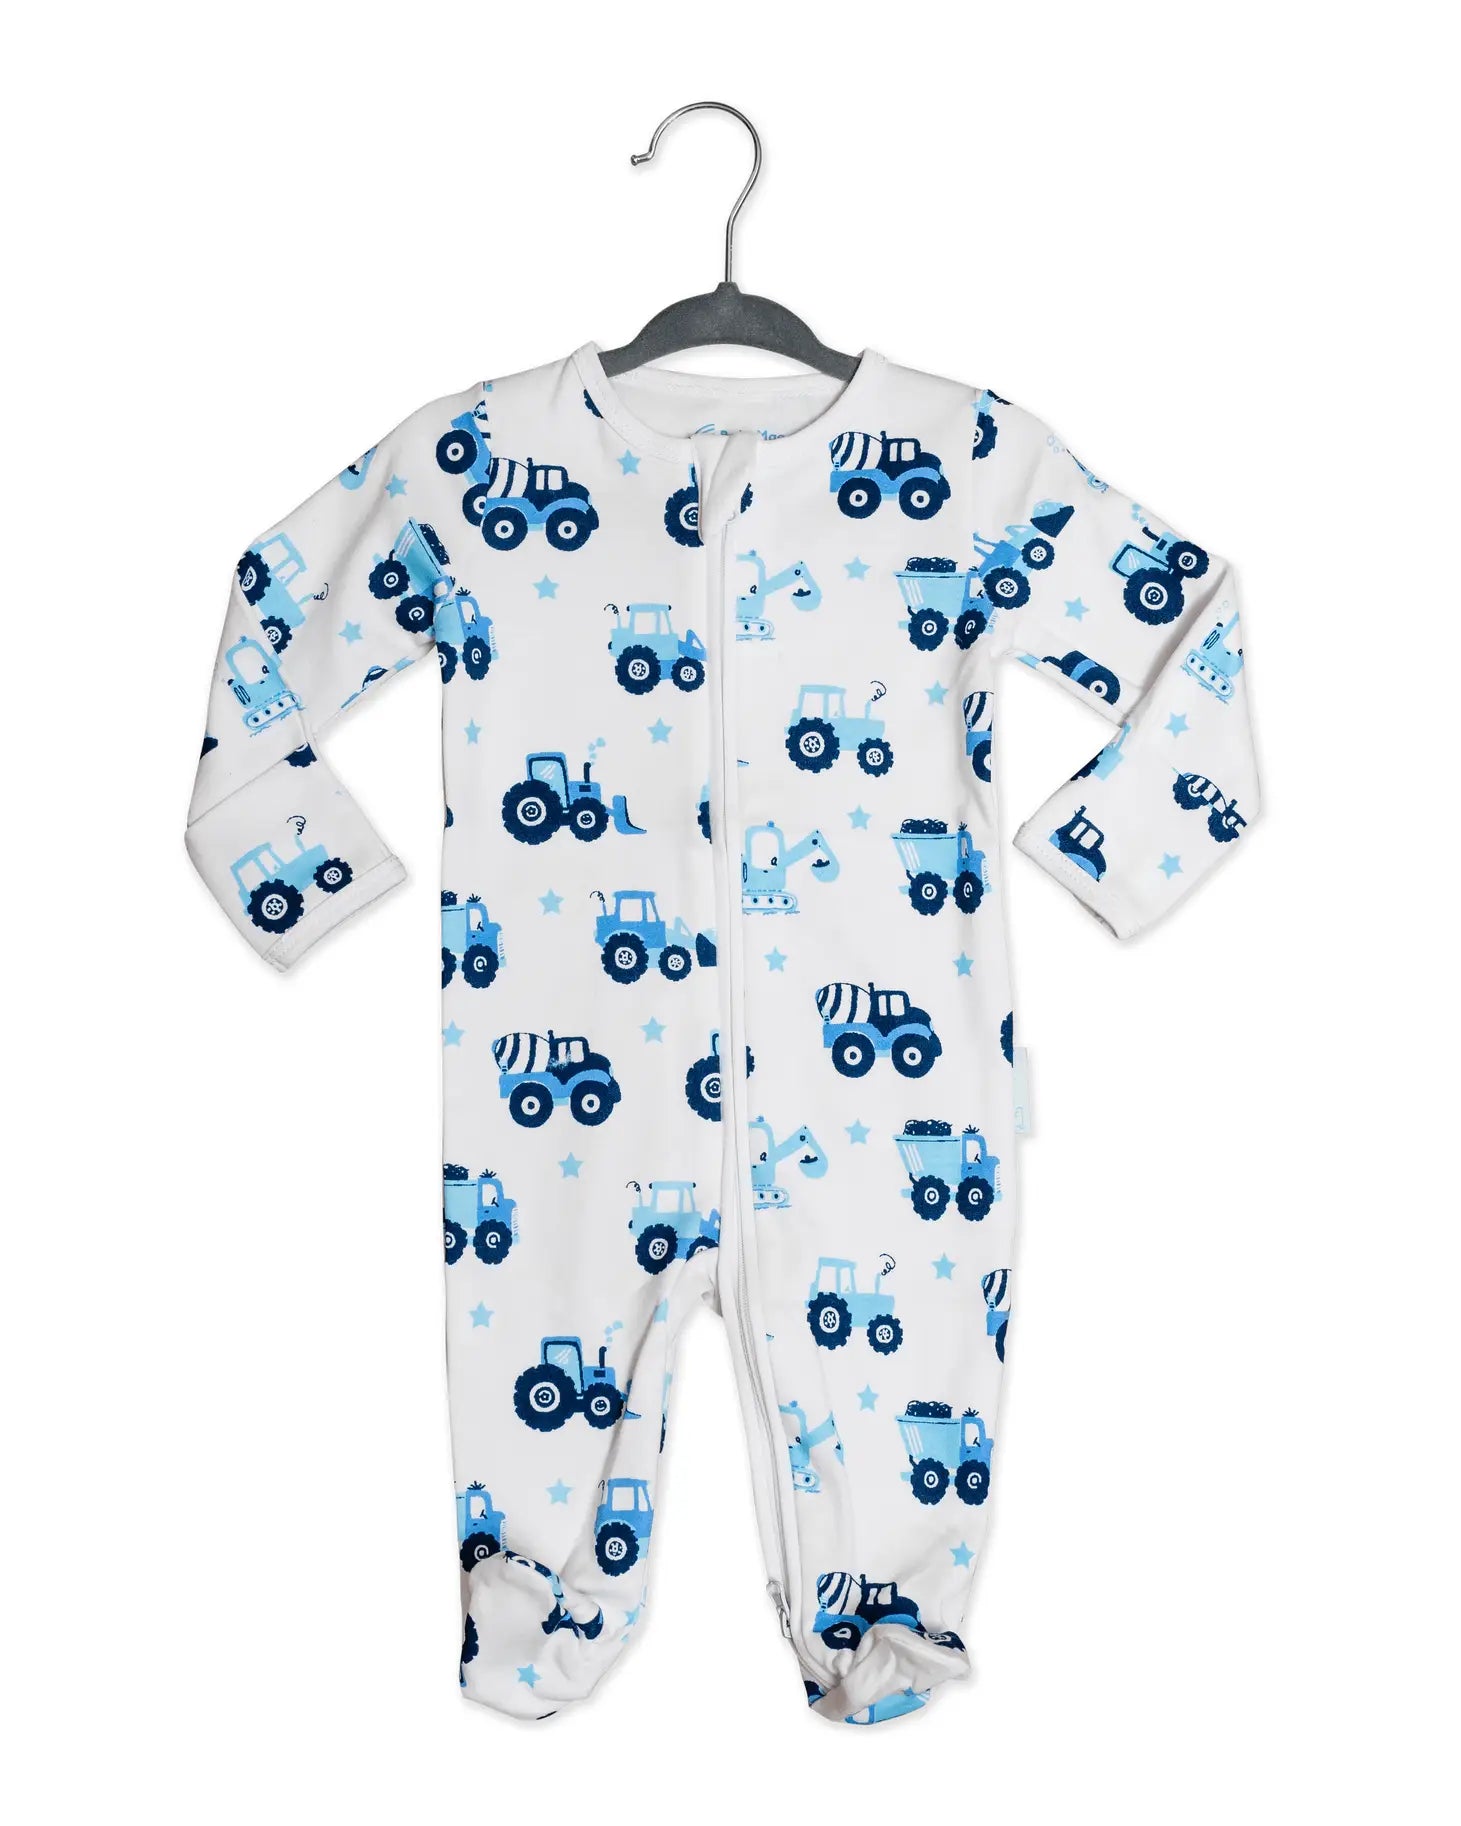 BabyMac Organic Cotton Sleepsuit Vehicle Print Zip up